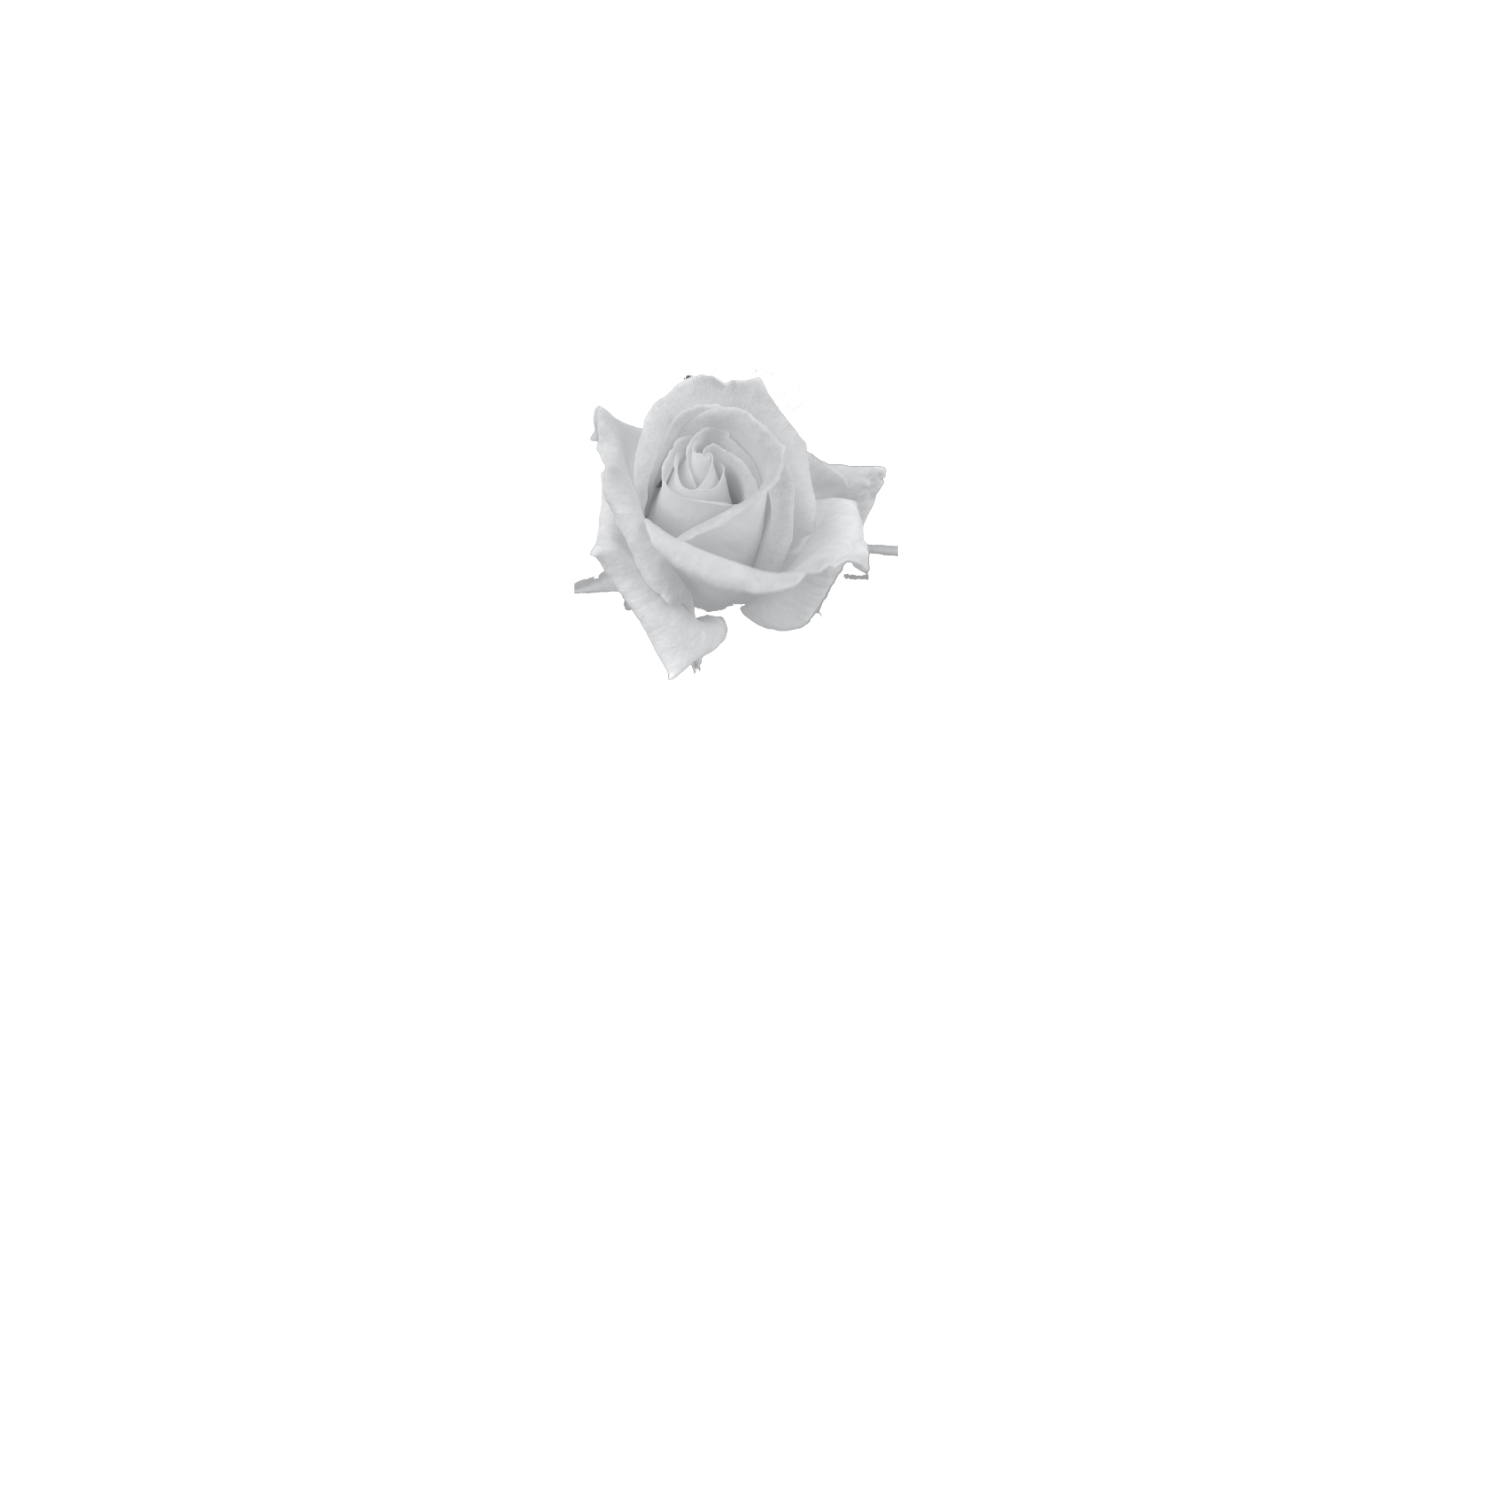 MARYEN CAIRNS